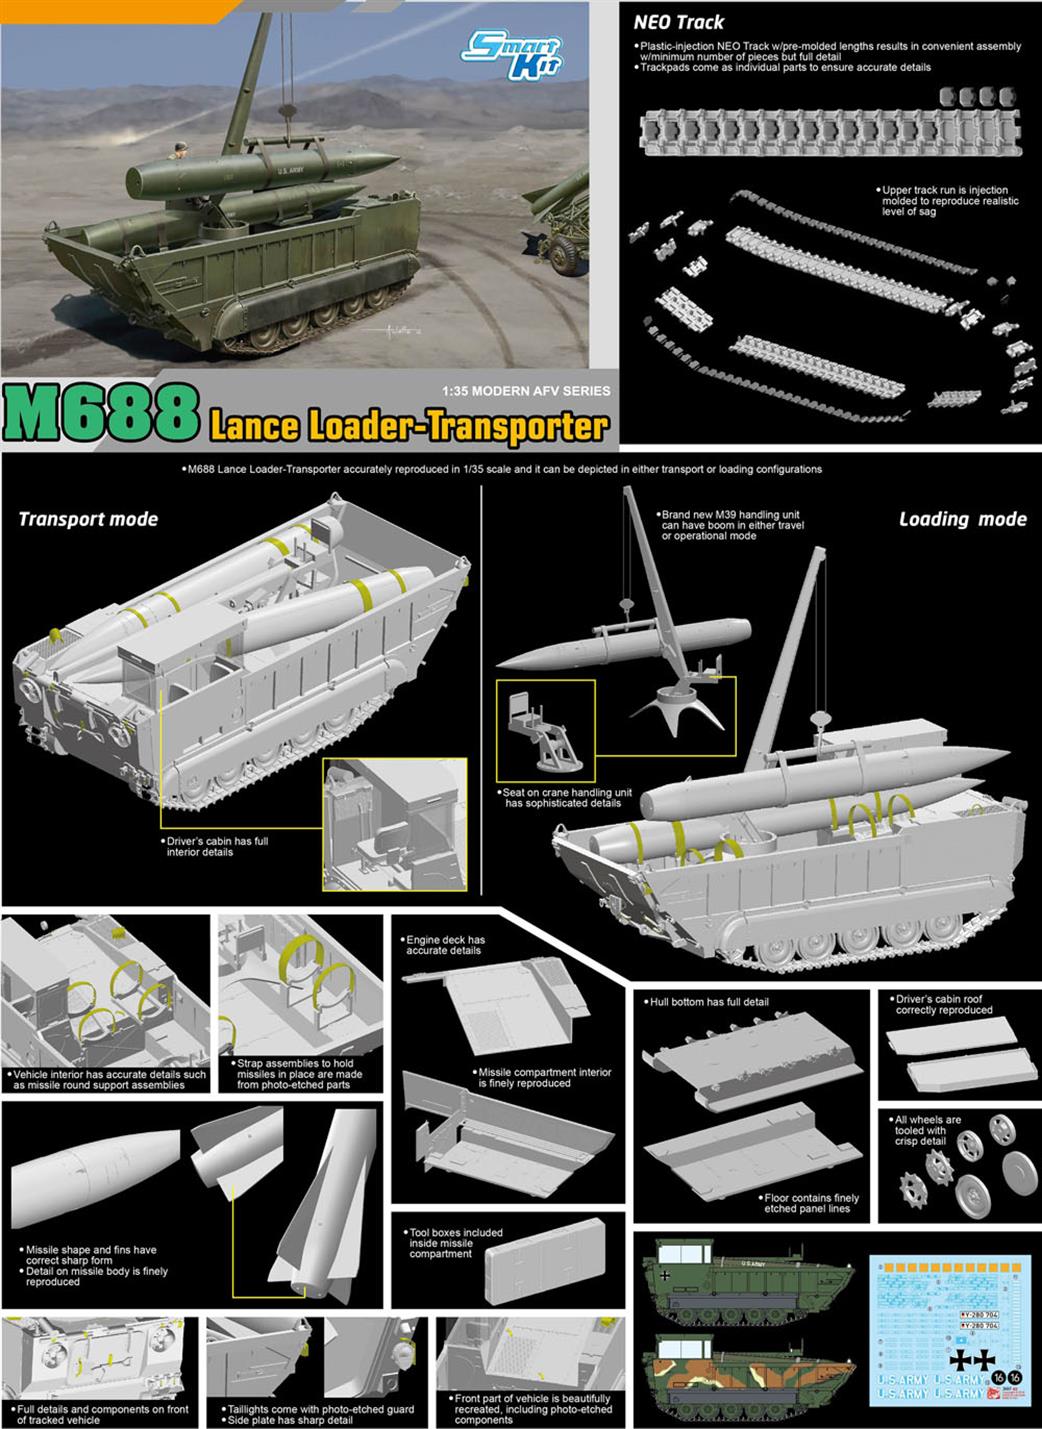 Dragon Models 3607 M688 Lance Loader Transporter Kit 1/35